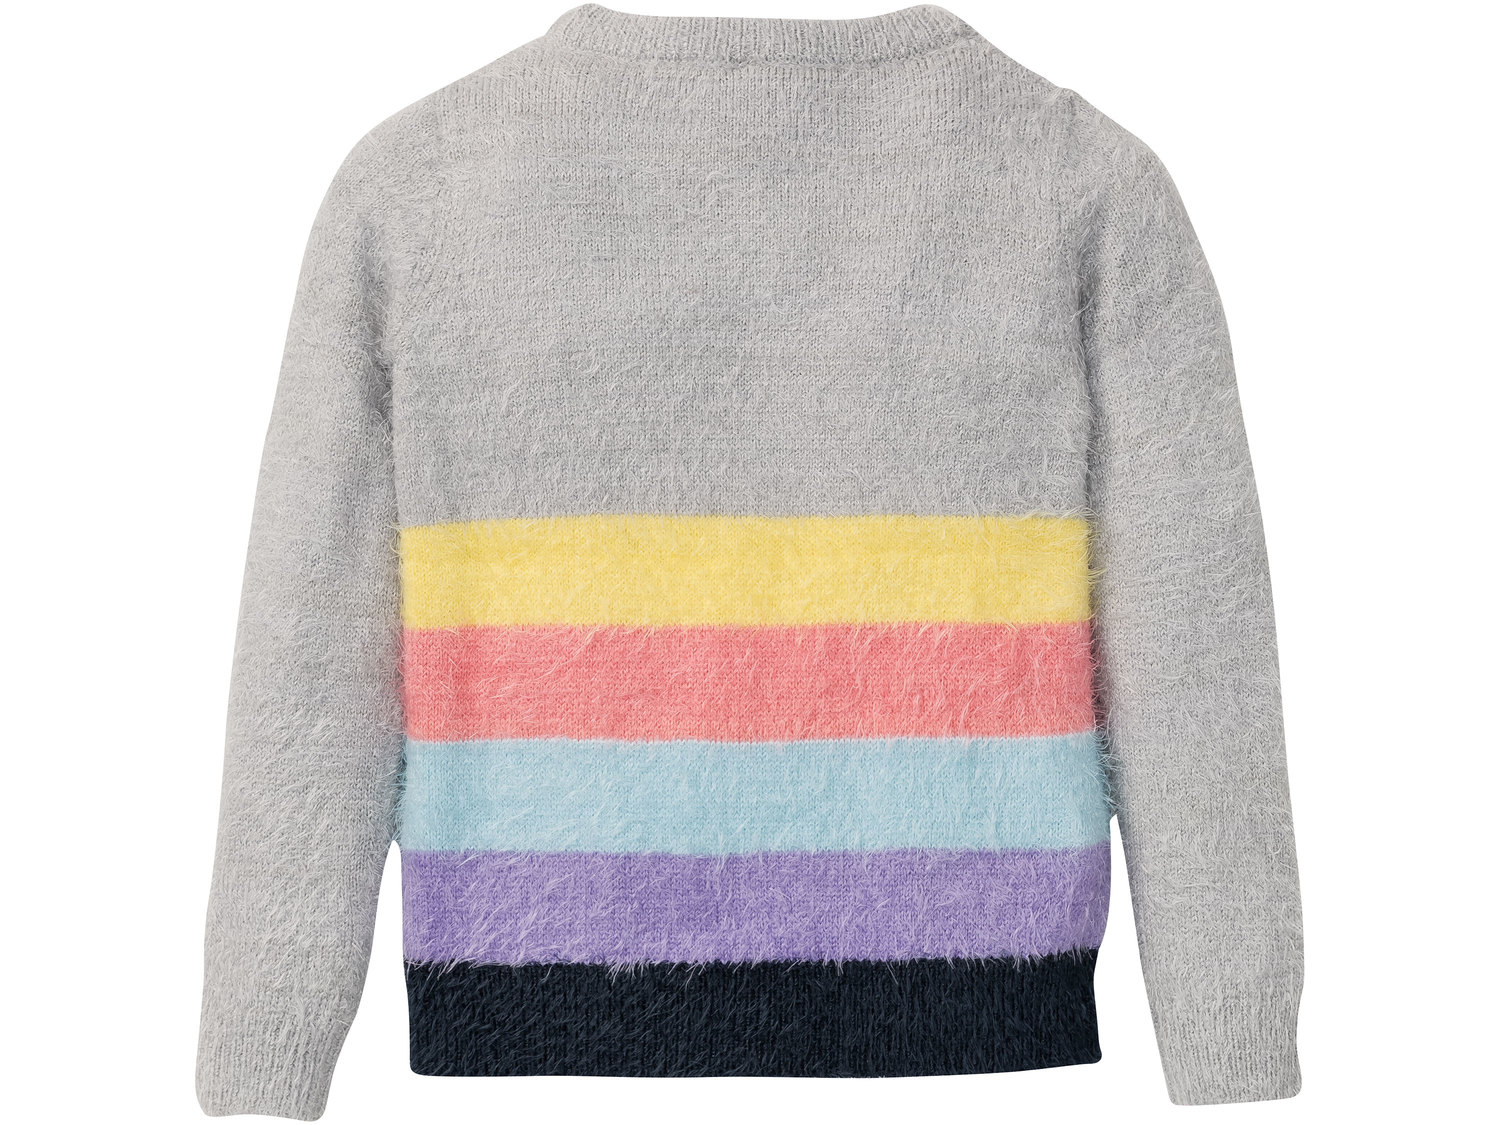 Sweter dziewczęcy Pepperts, cena 34,99 PLN 
- rozmiary: 122-164
- przyjemny, miękki ...